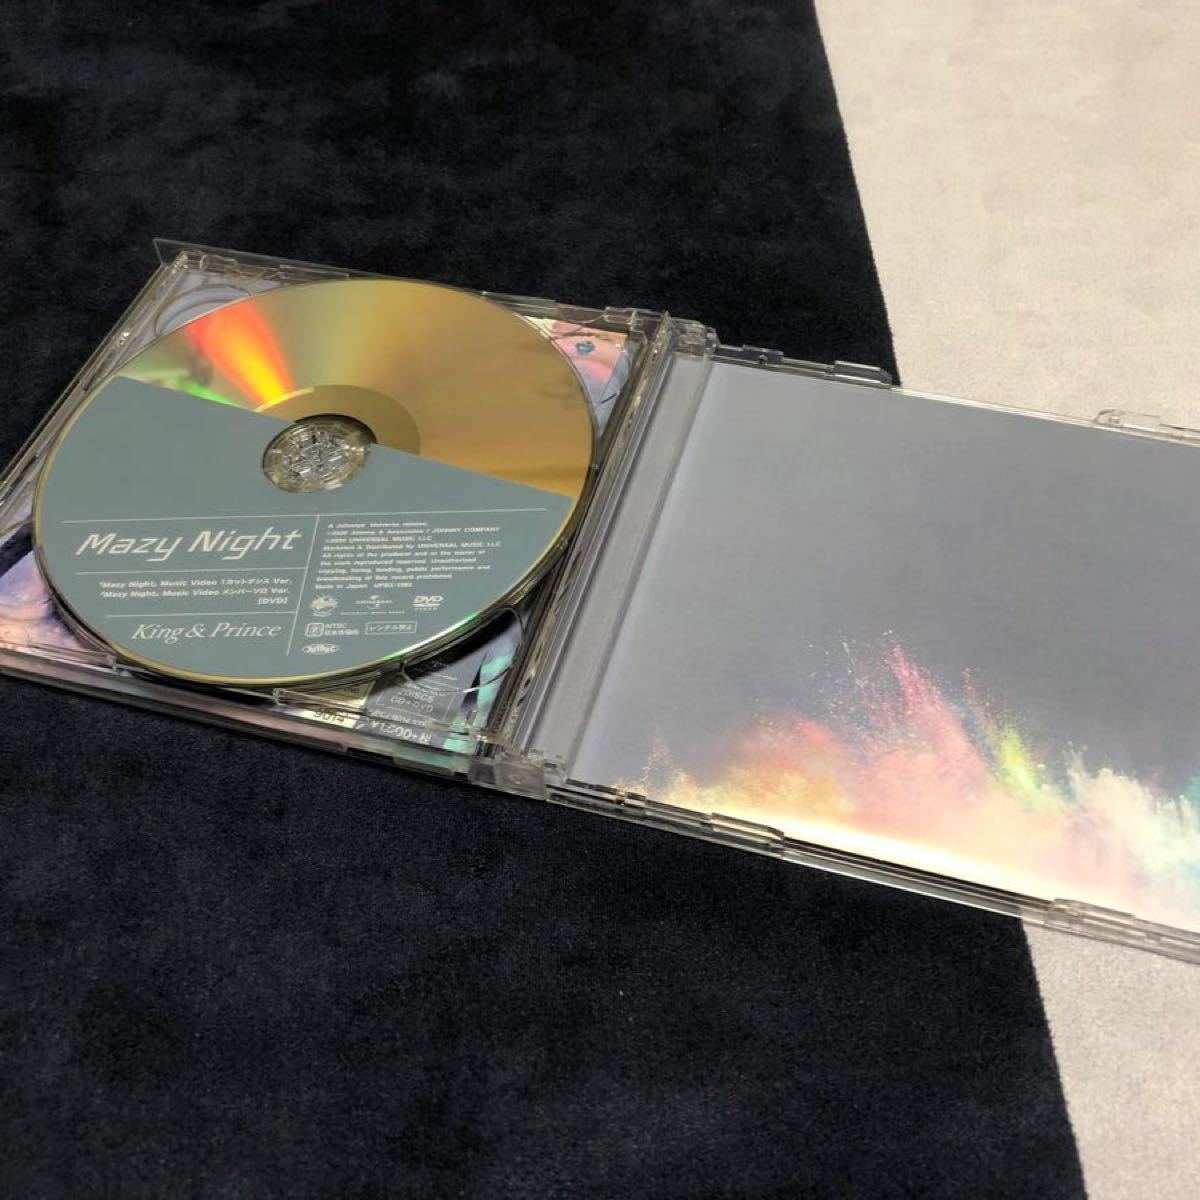 King & Prince  初回限定盤B  CD+DVDの2枚組となります。